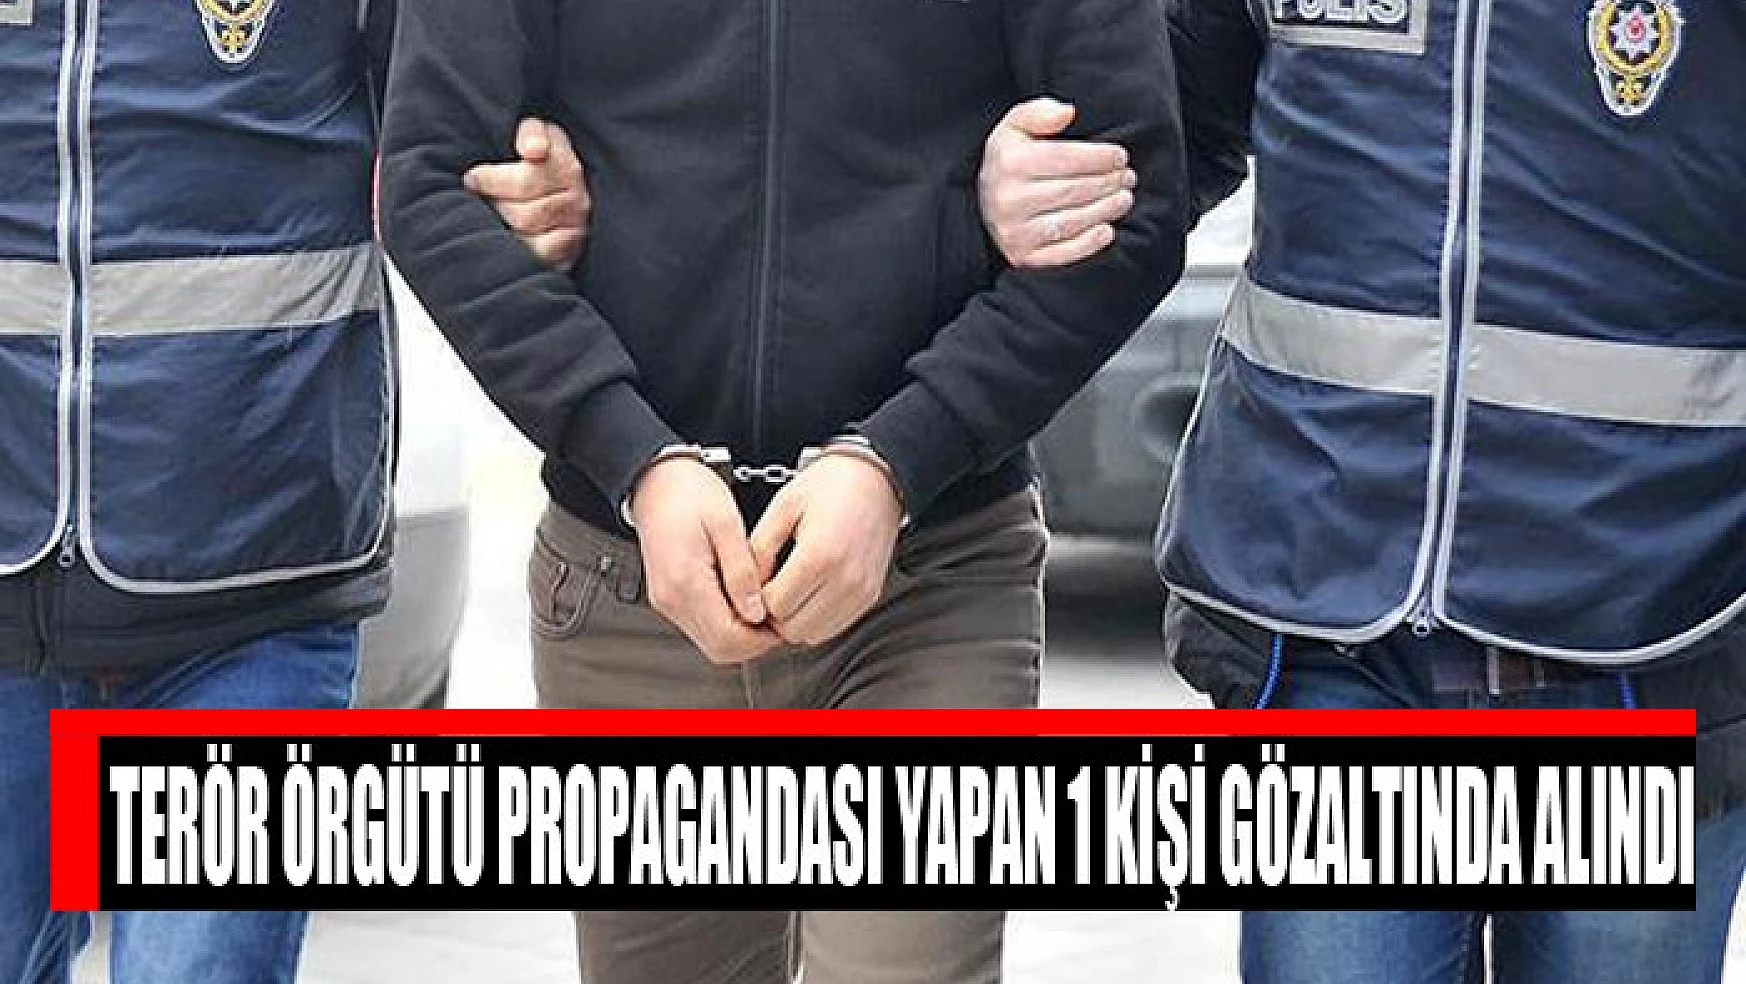 Terör örgütü propagandası yapan 1 kişi gözaltında alındı